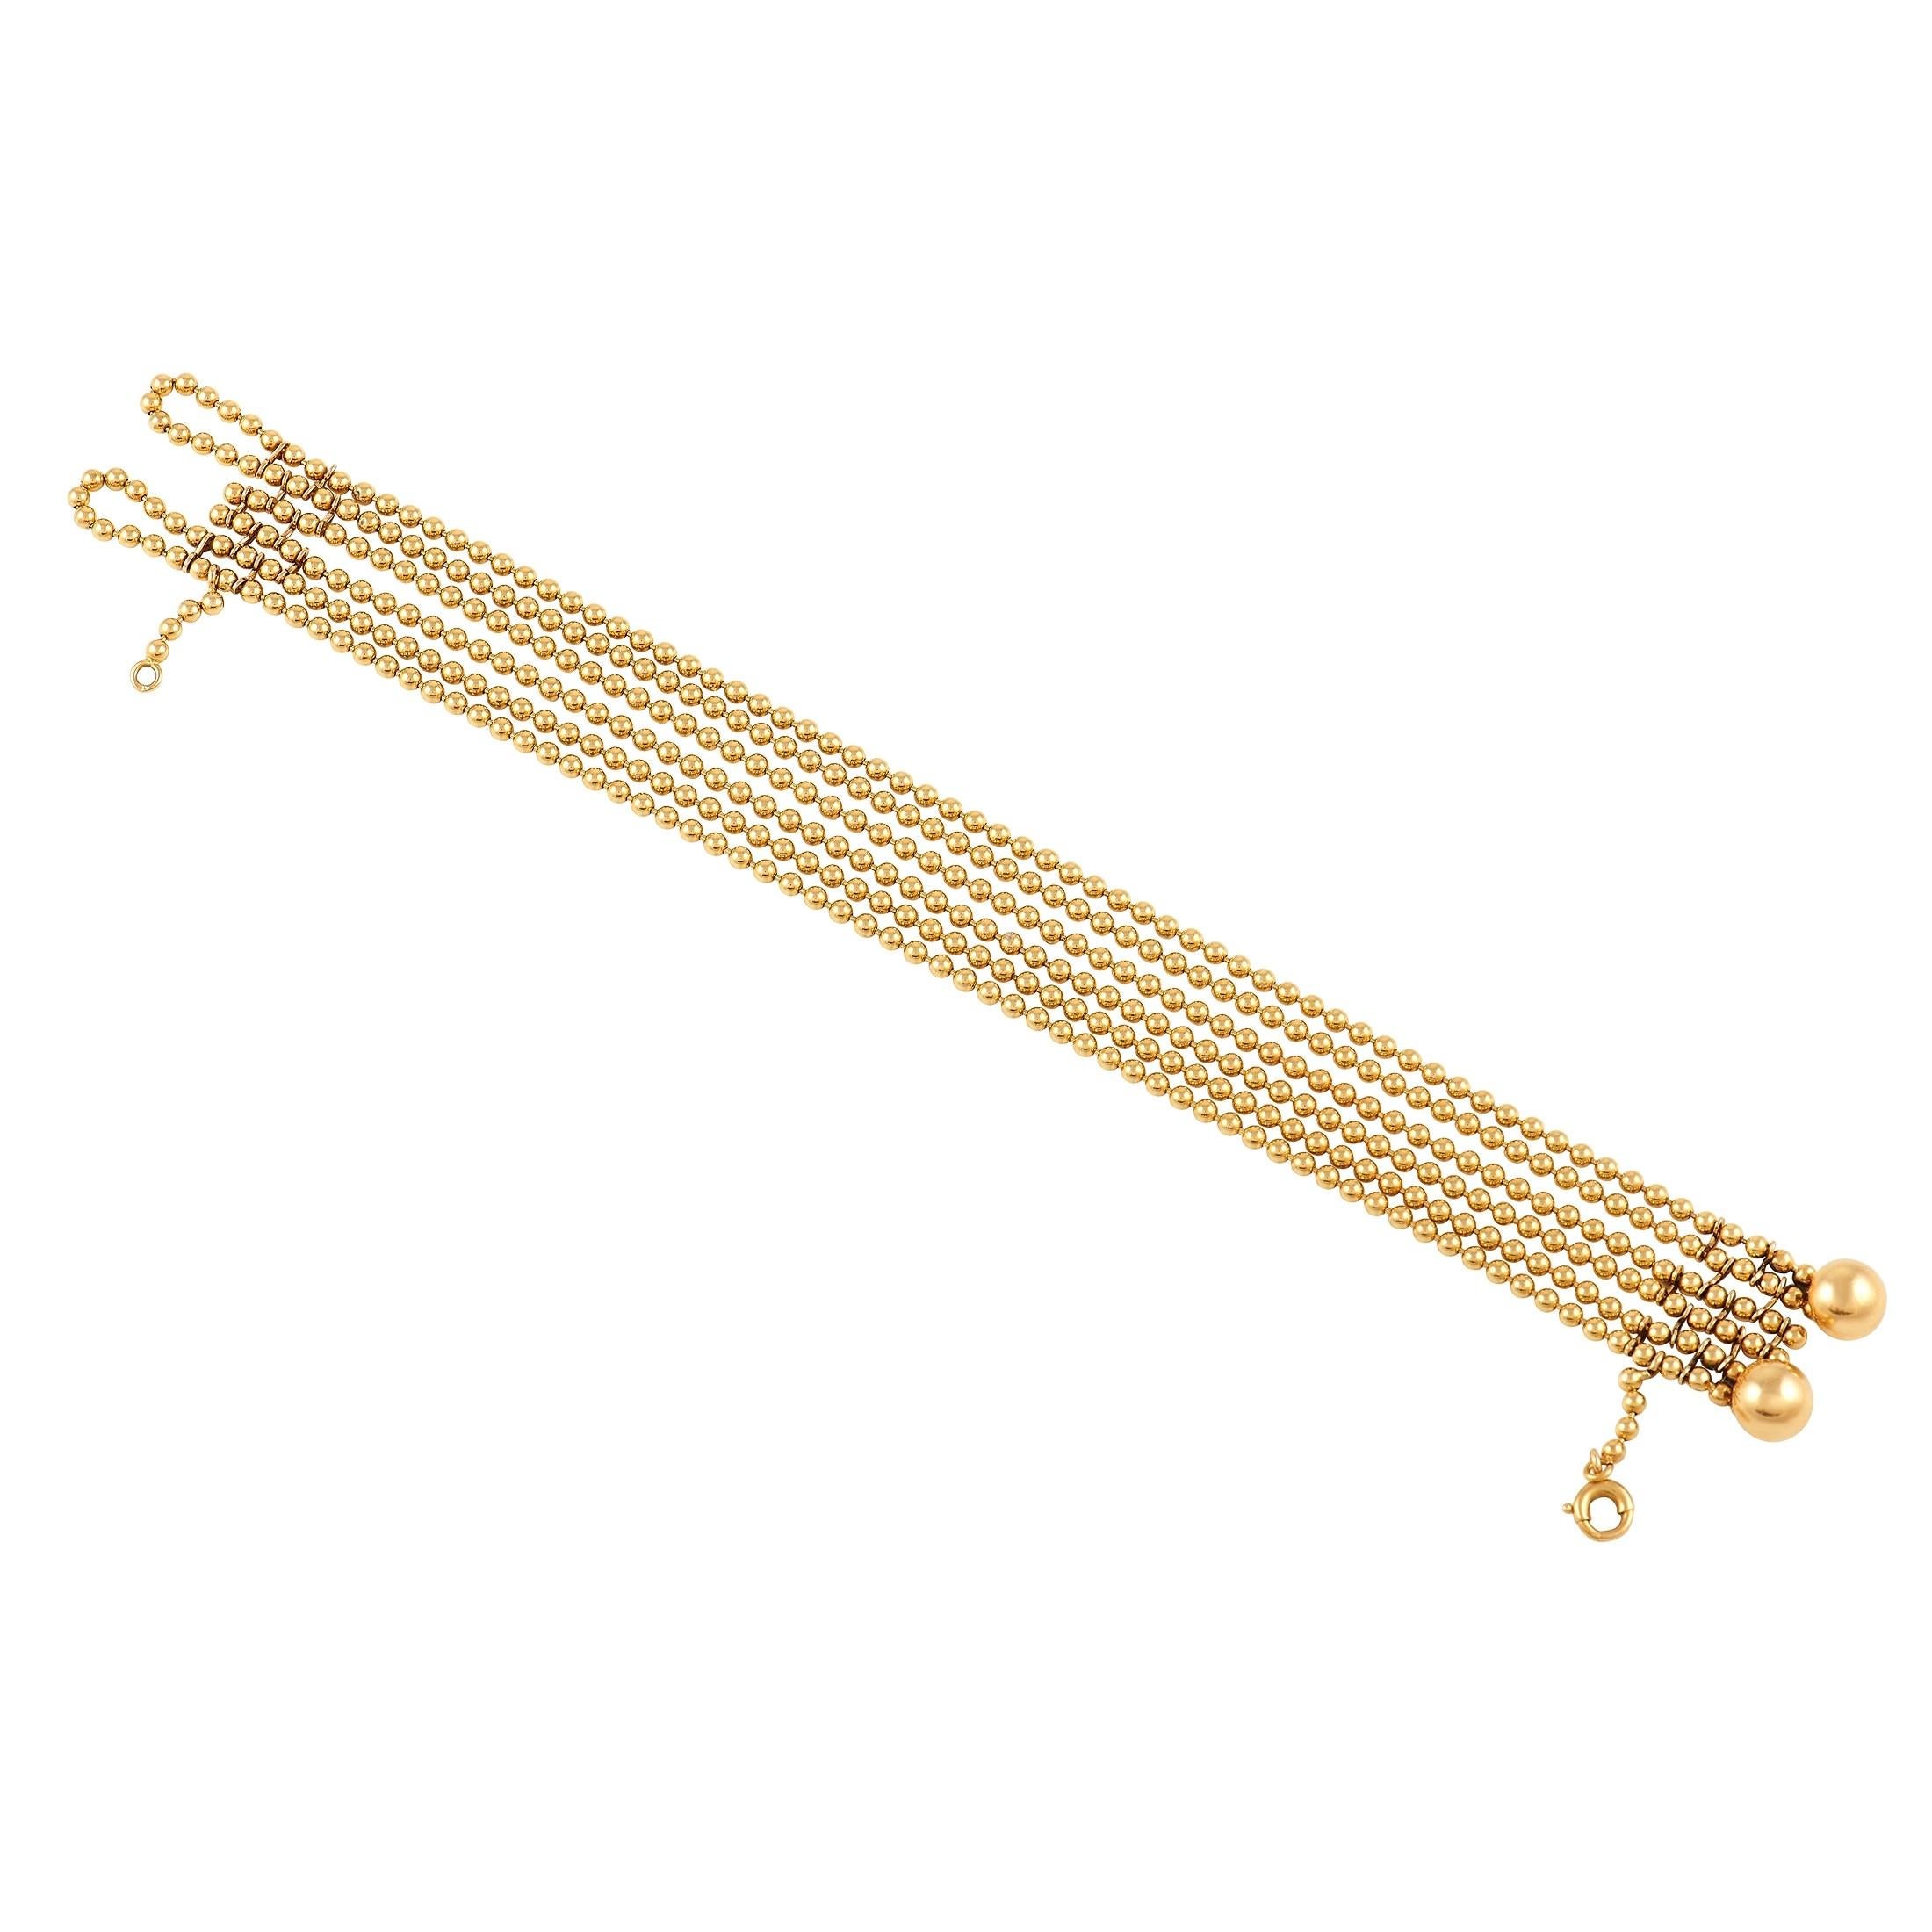 Mehrere Reihen von Perlenketten lassen dieses Armband von Cartier Draperie zart um das Handgelenk drapieren. Dieses exquisite Stück ist komplett aus glänzendem 18K Gelbgold gefertigt und misst 7